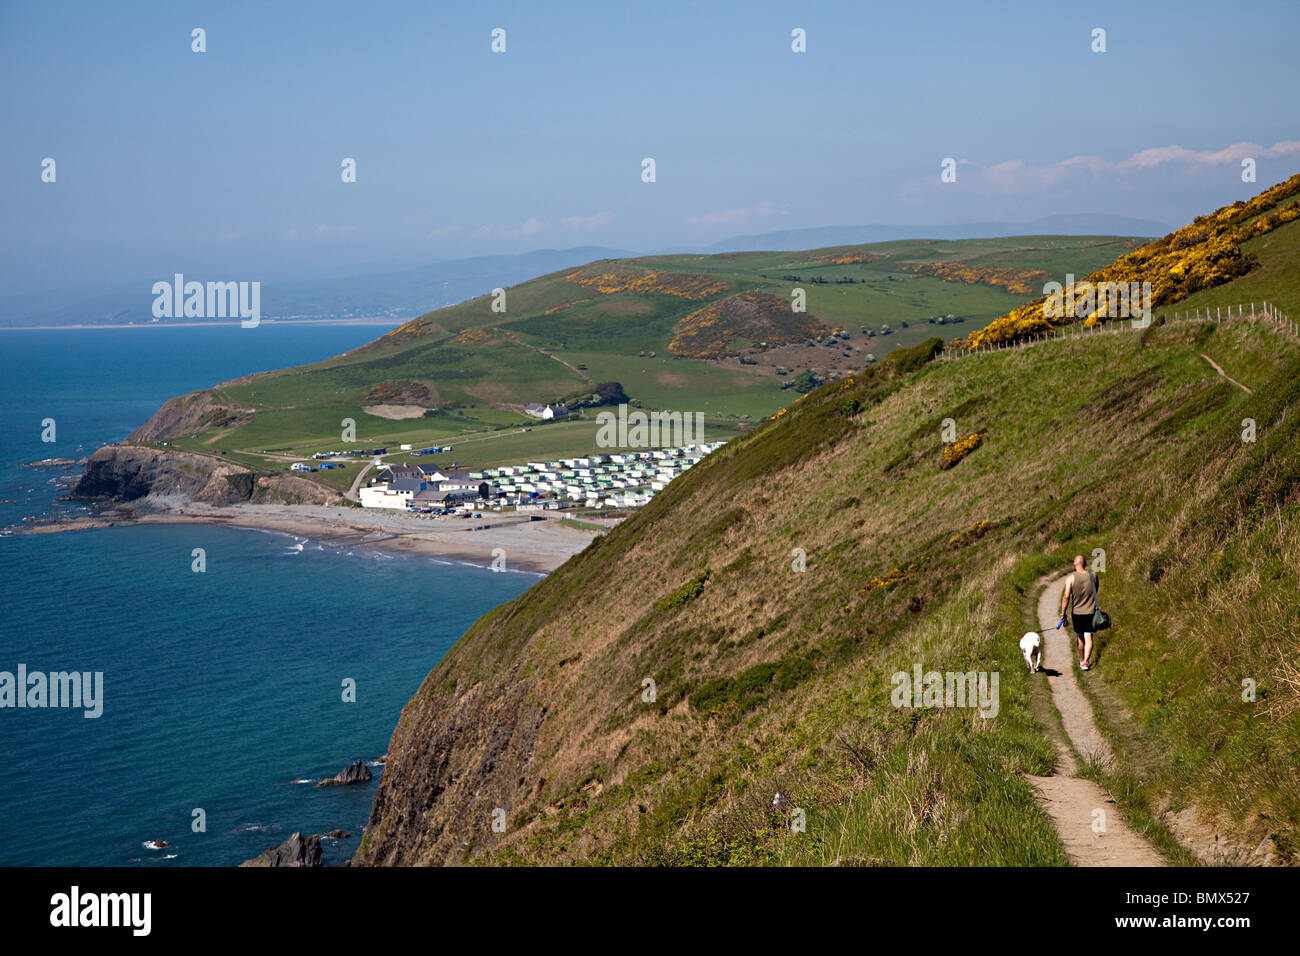 Uomo che cammina cane sul sentiero costiero sulle scogliere con caravan park vacanze in distanza Aberystwyth Wales UK Foto Stock